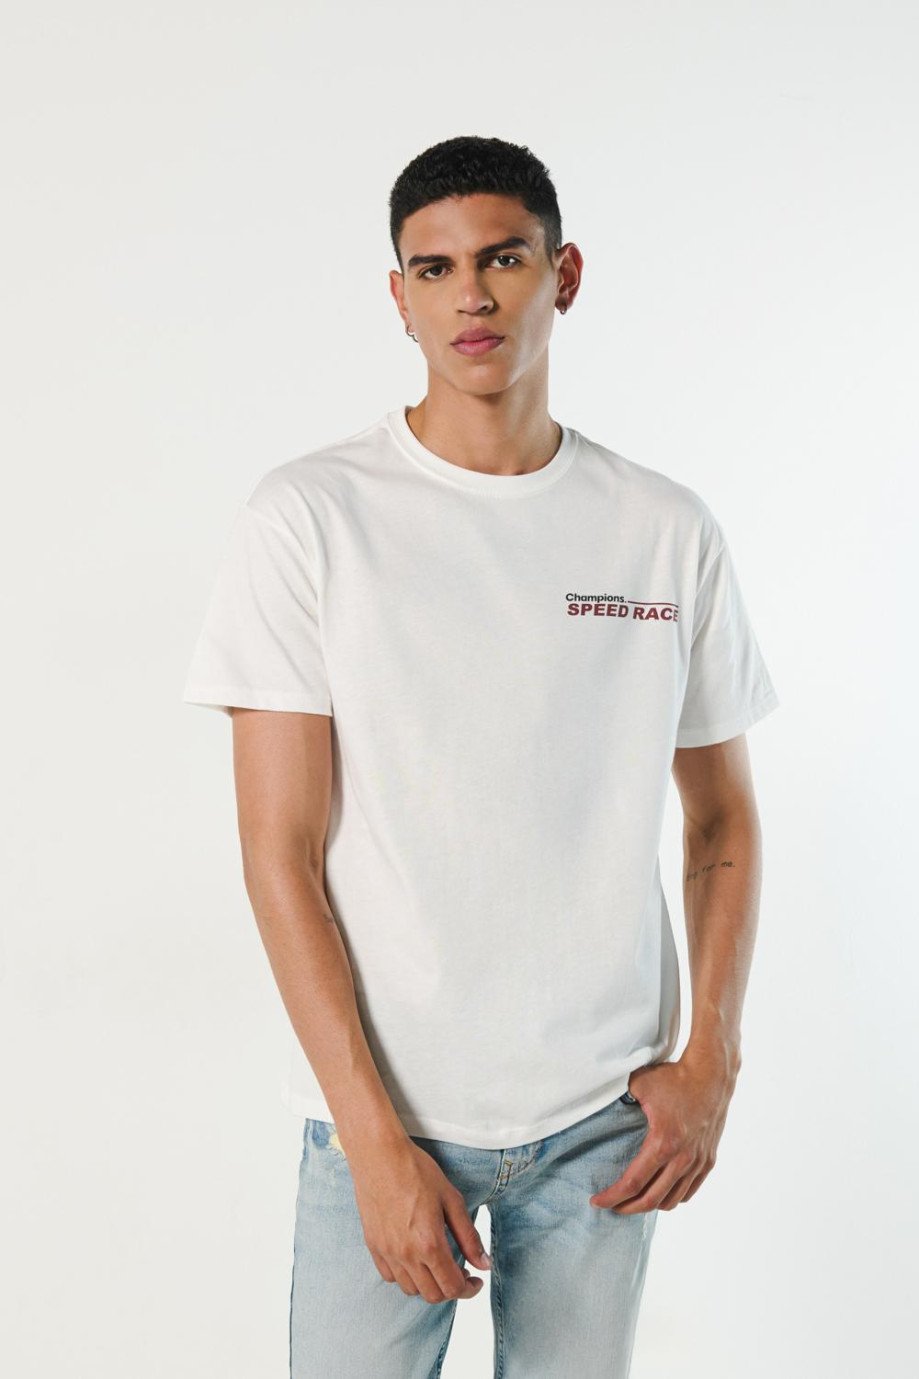 Camiseta cuello redondo unicolor con diseños racer